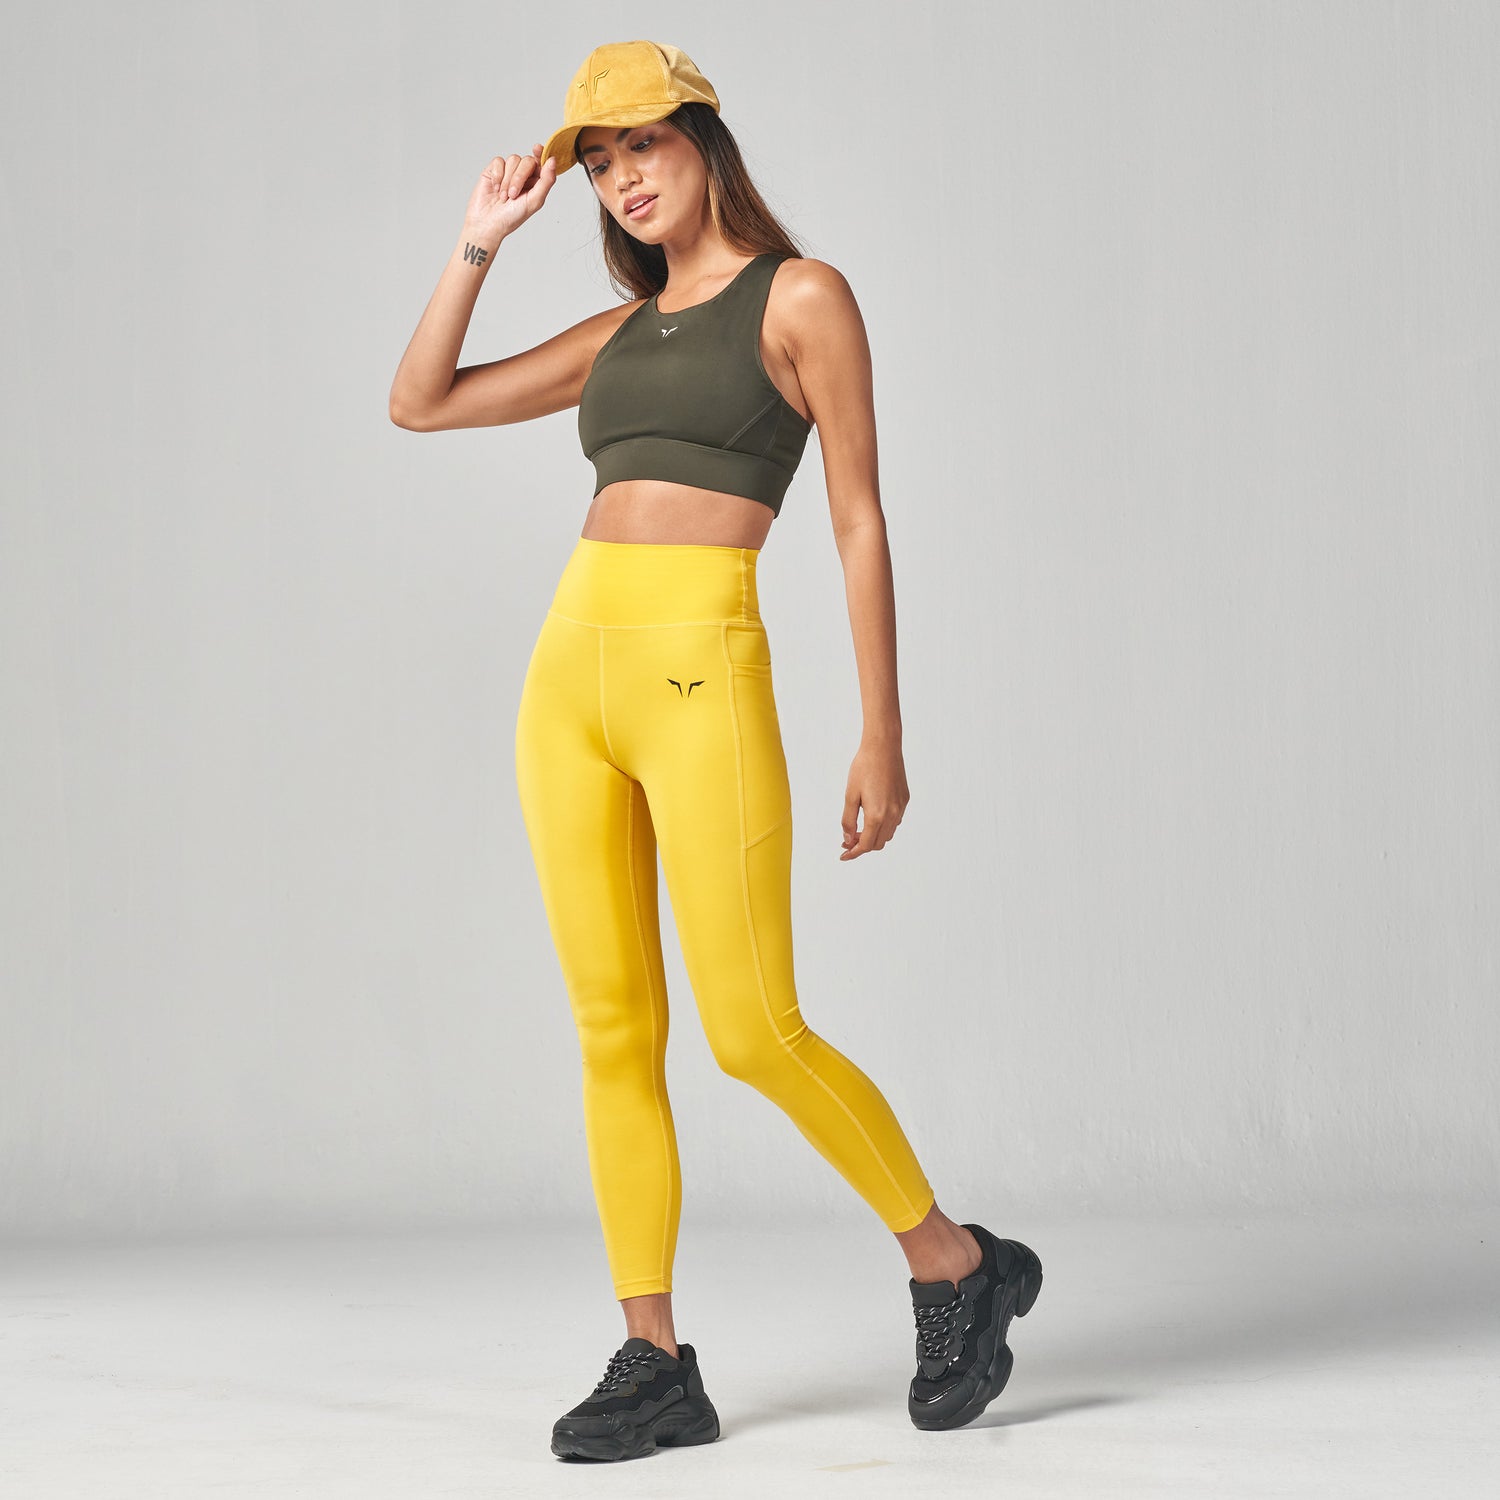  Yellow - Women's Activewear Leggings / Women's